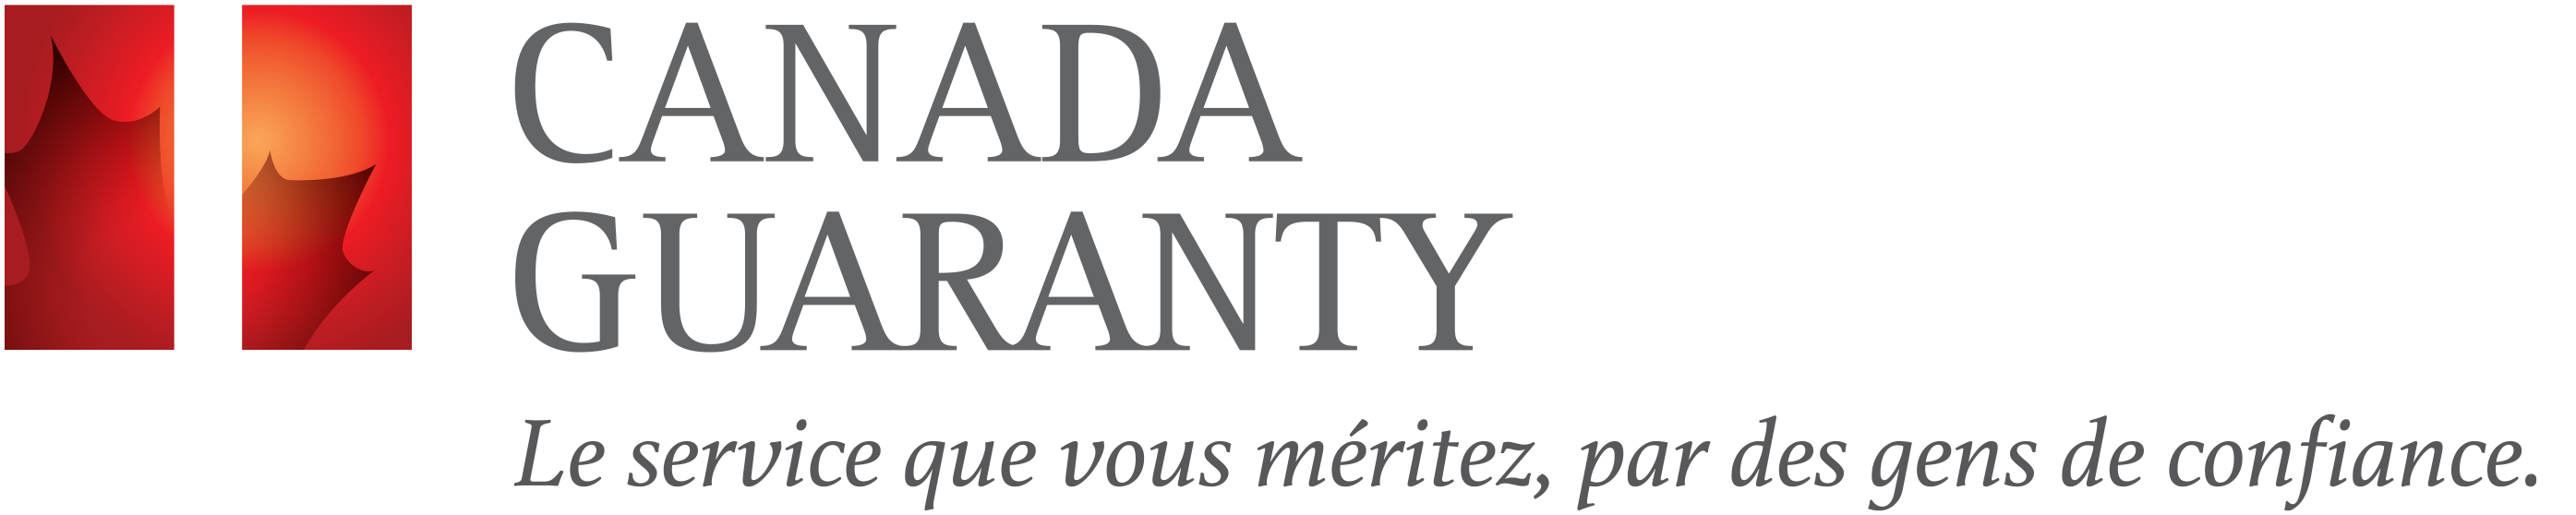 Société d’assurance hypothécaire Canada Guaranty Logo